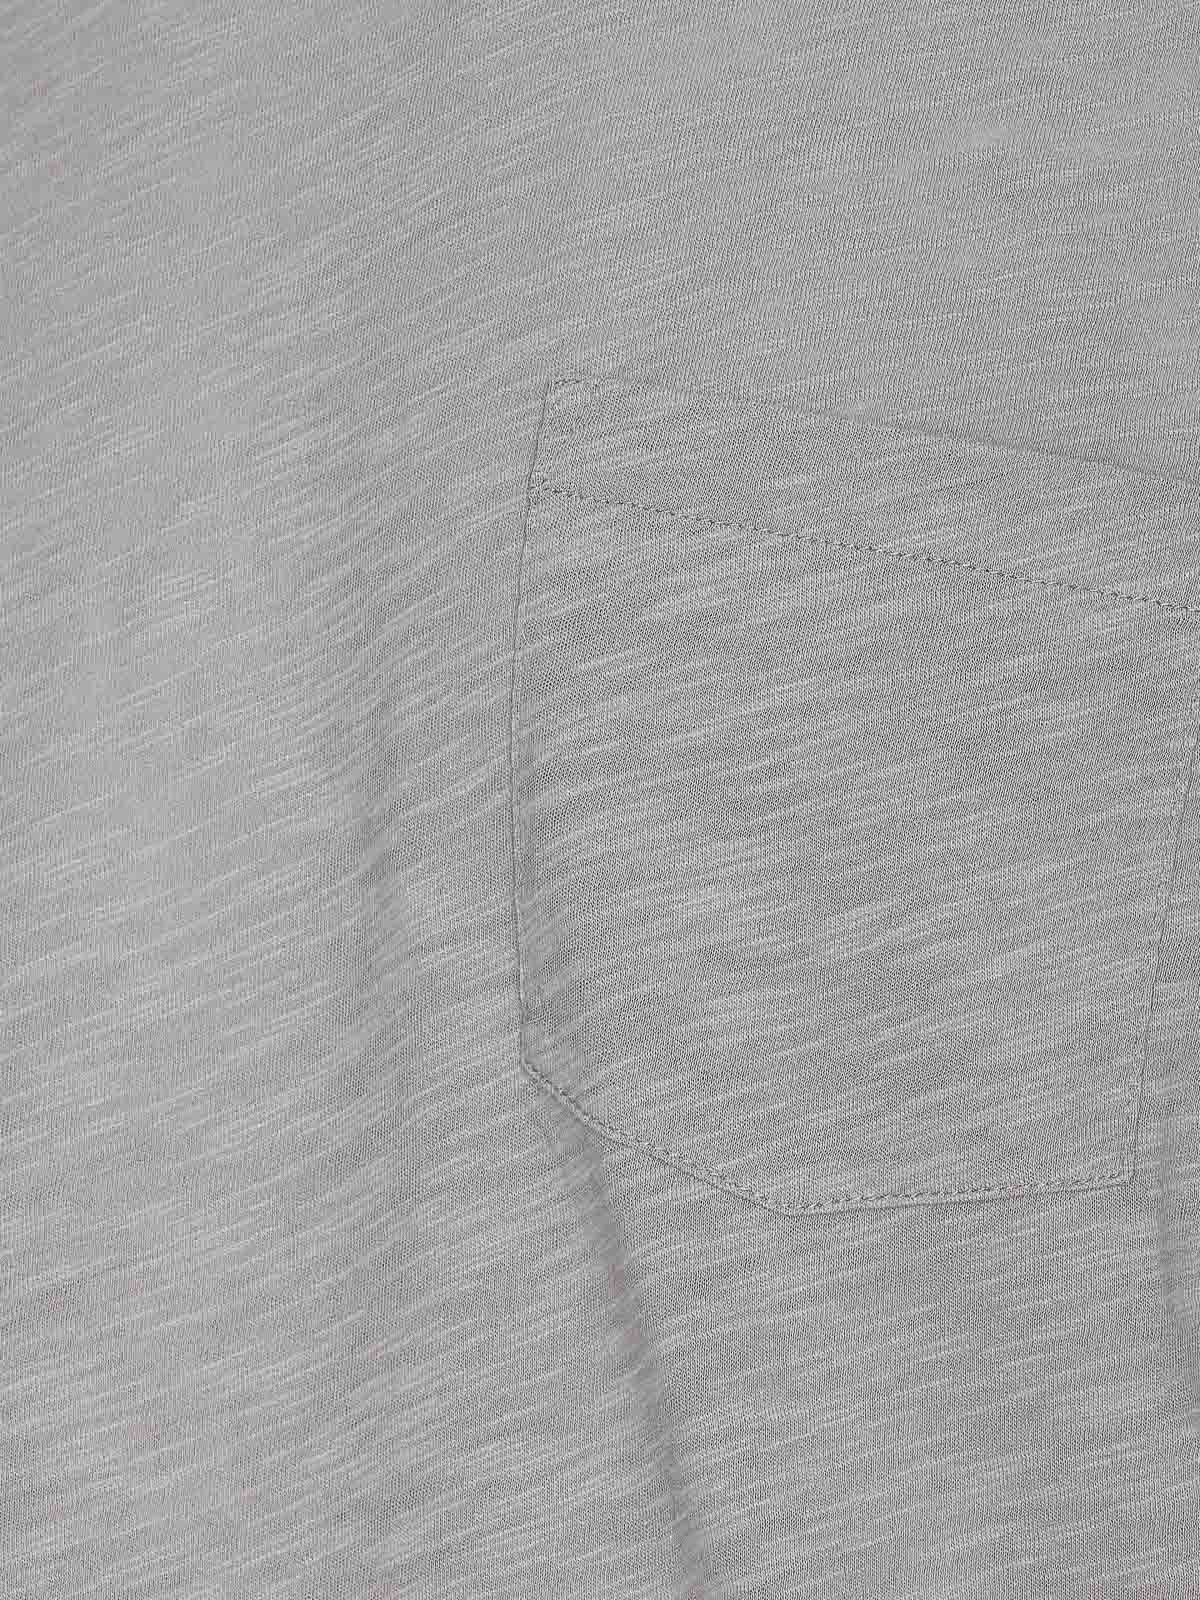 Shop Zadig & Voltaire Camiseta - Gris In Grey